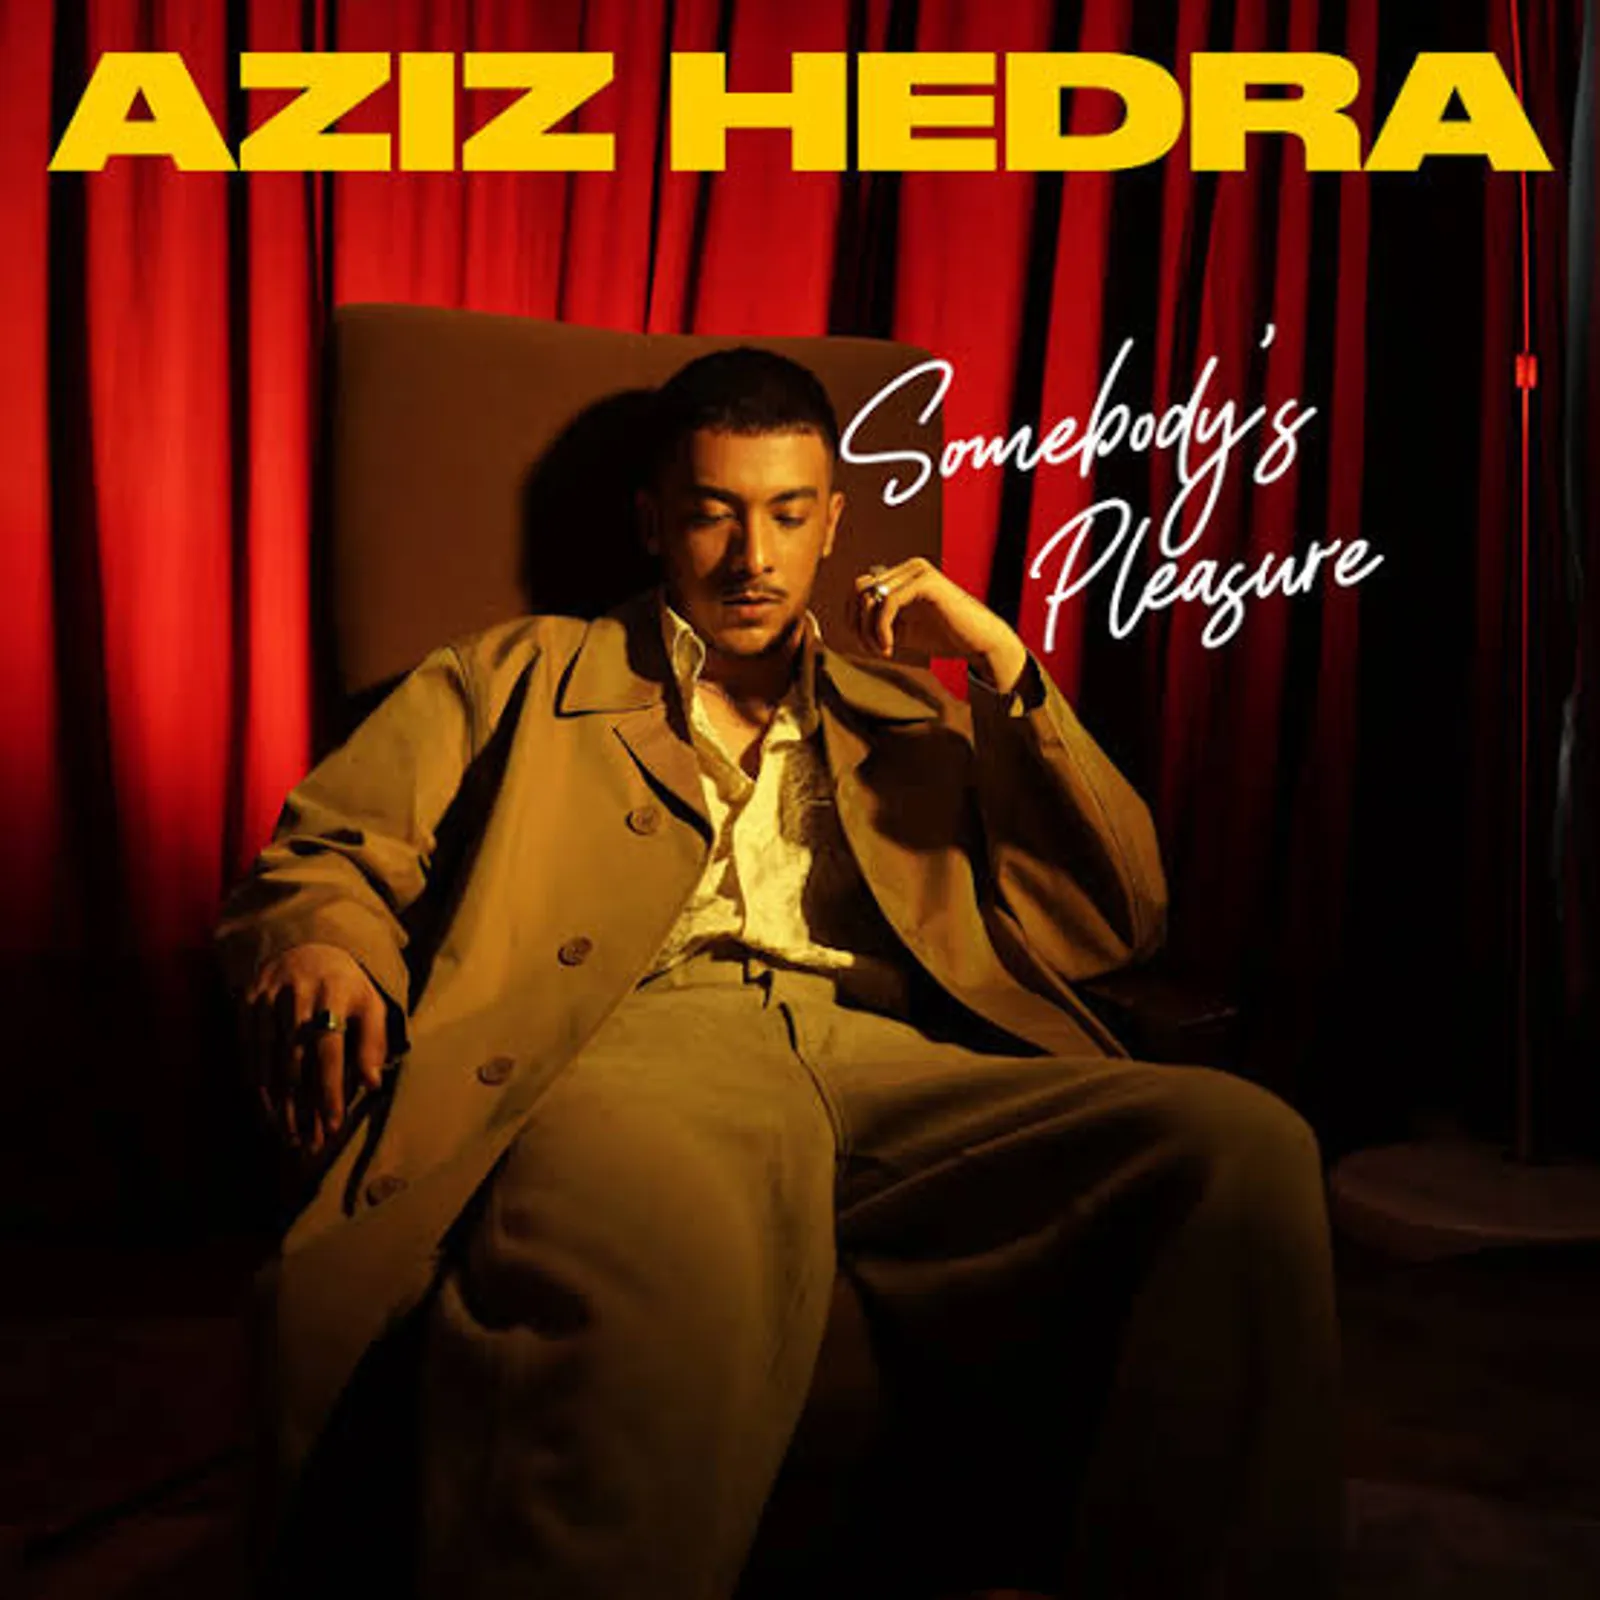 Lirik Lagu "Somebody’s Pleasure" - Aziz Hedra yang Viral di Sosmed 